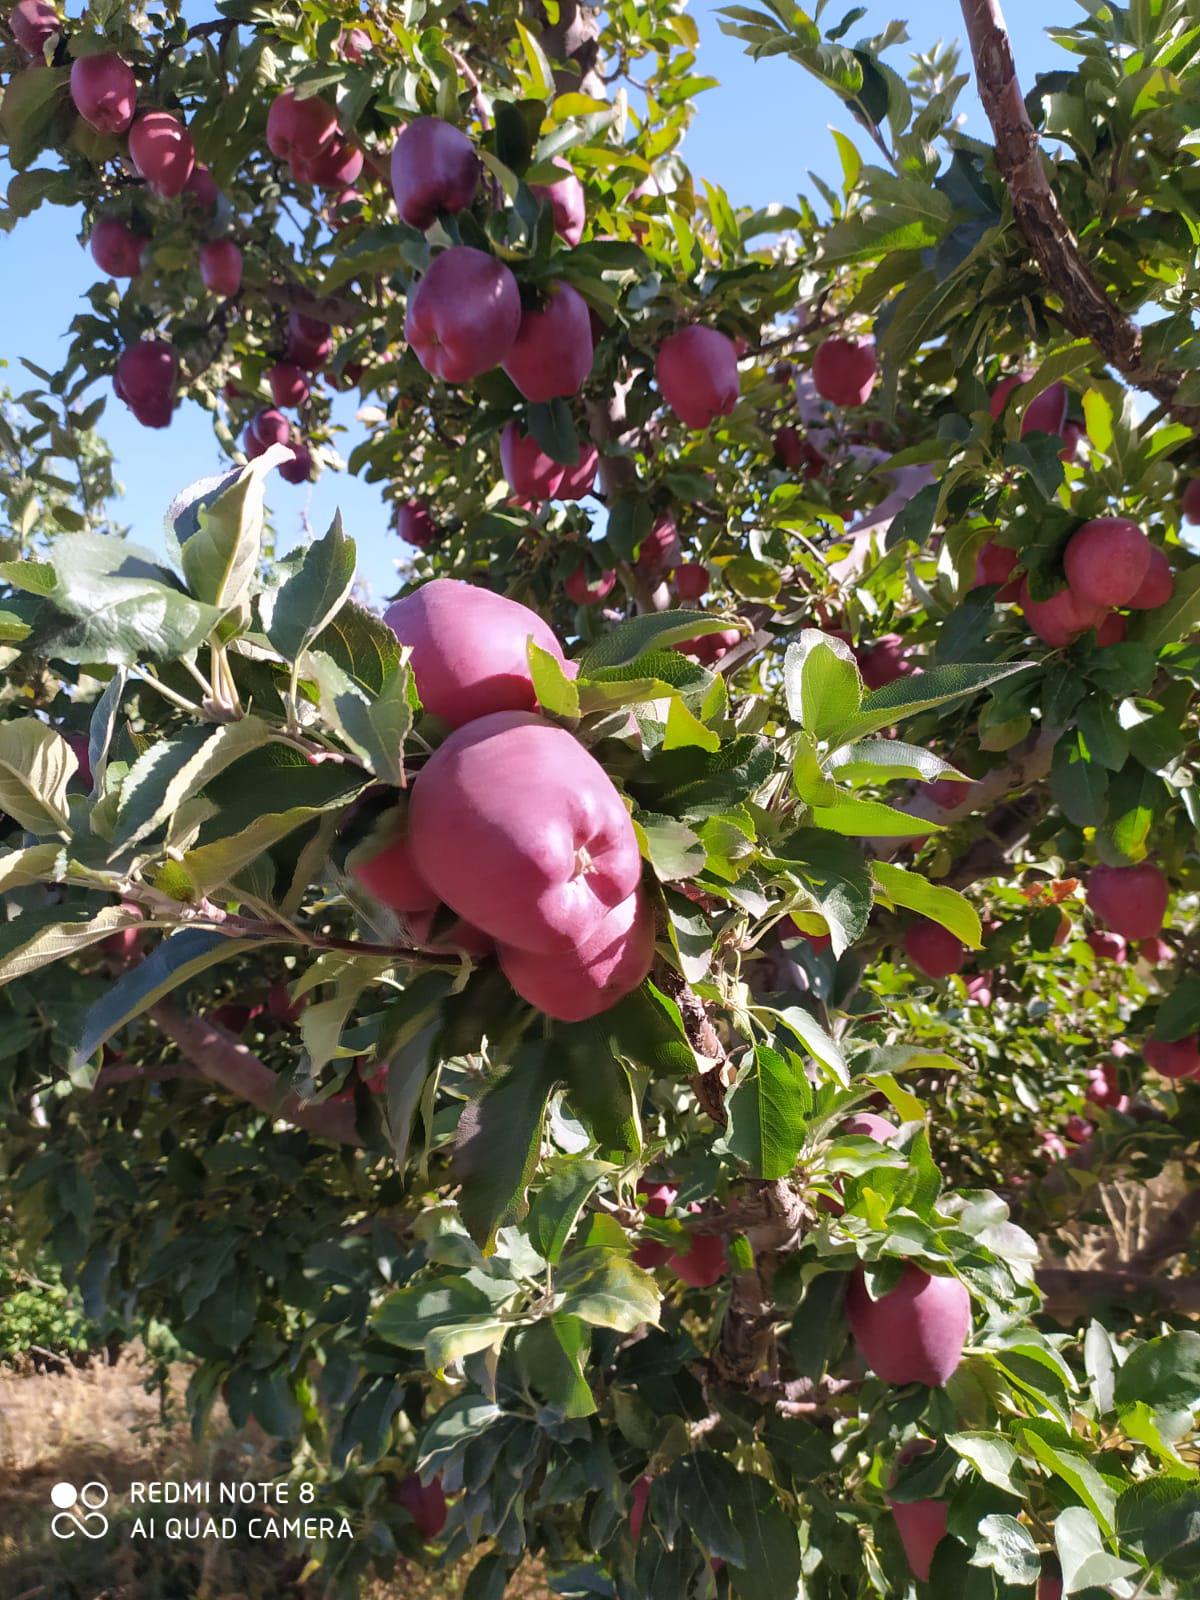 Elma - Barıs Barıs tarafından verilen satılık red chıef çeşidi elma  ilanını ve diğer satılık elma ilanlarını tarimziraat.com adresinde bulabilirsiniz